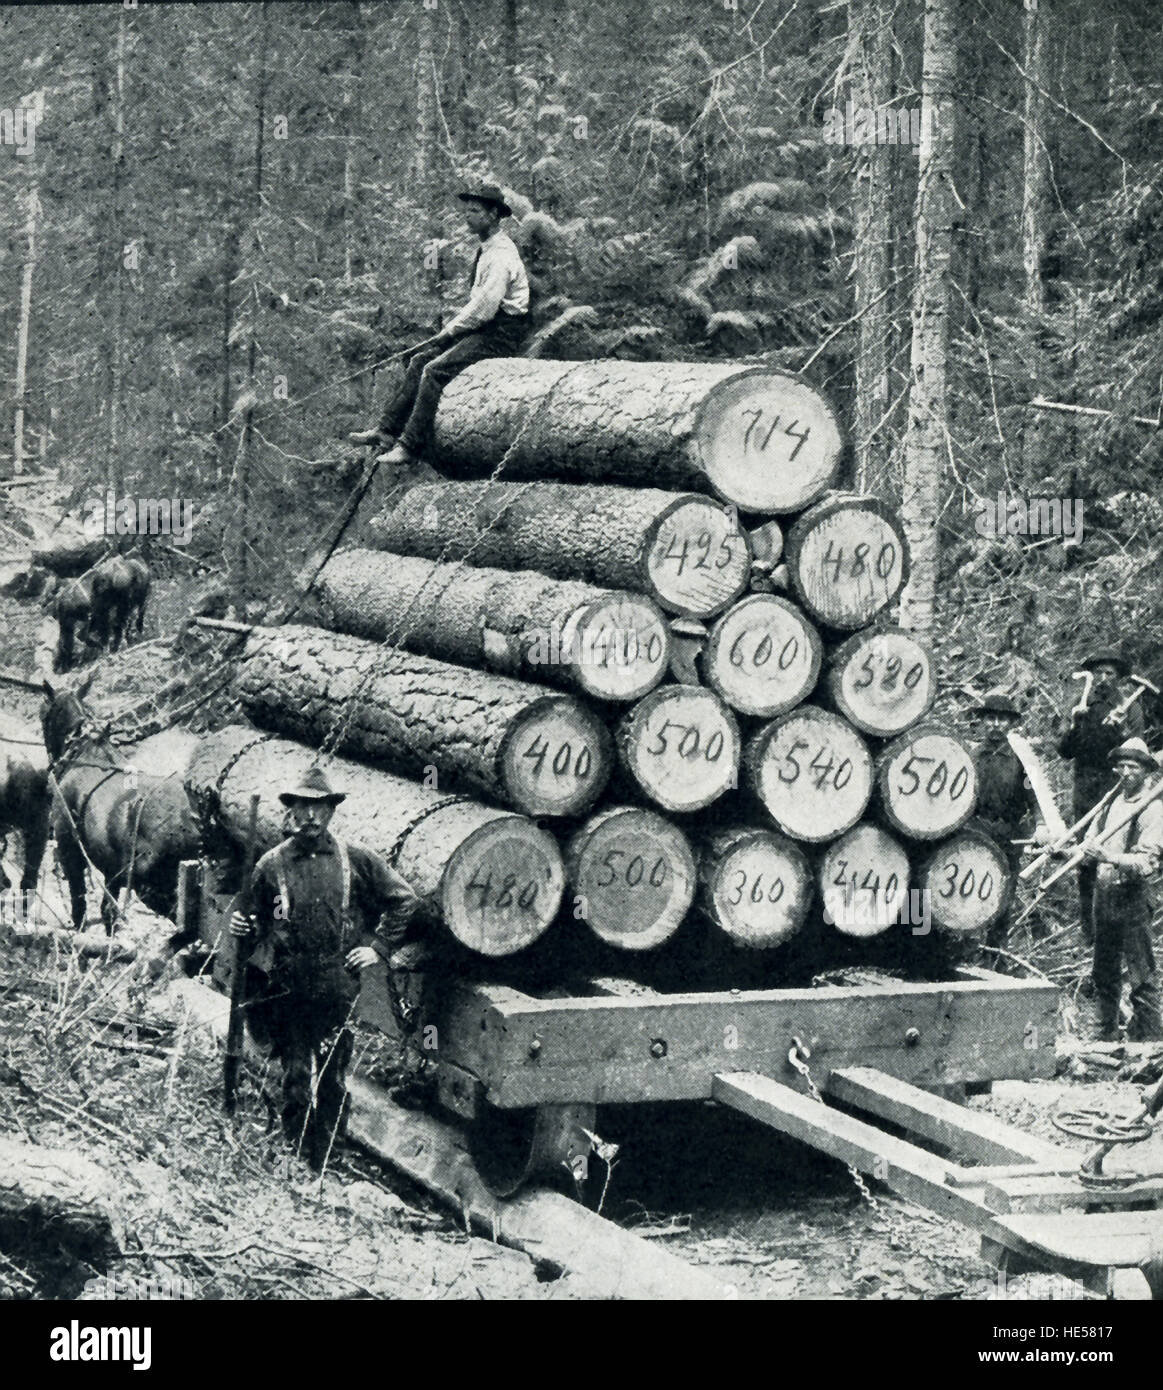 1800 s logging photos